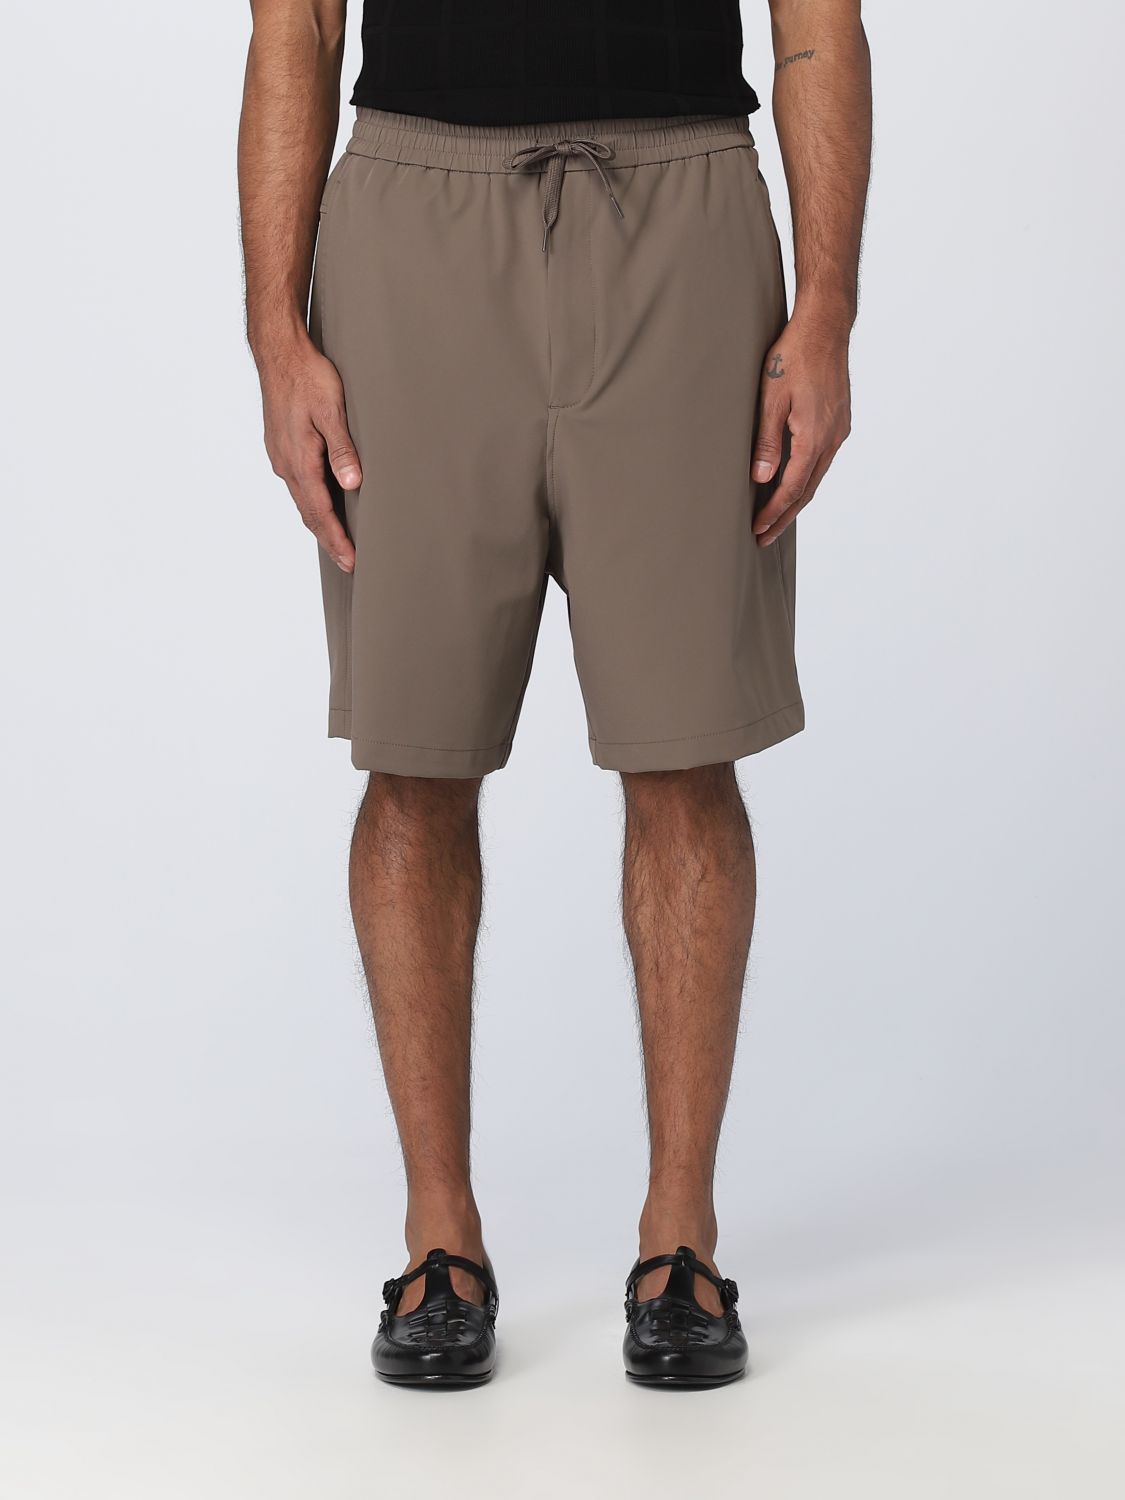 EMPORIO ARMANI: shorts nylon - Brown | Emporio Armani short online on GIGLIO.COM